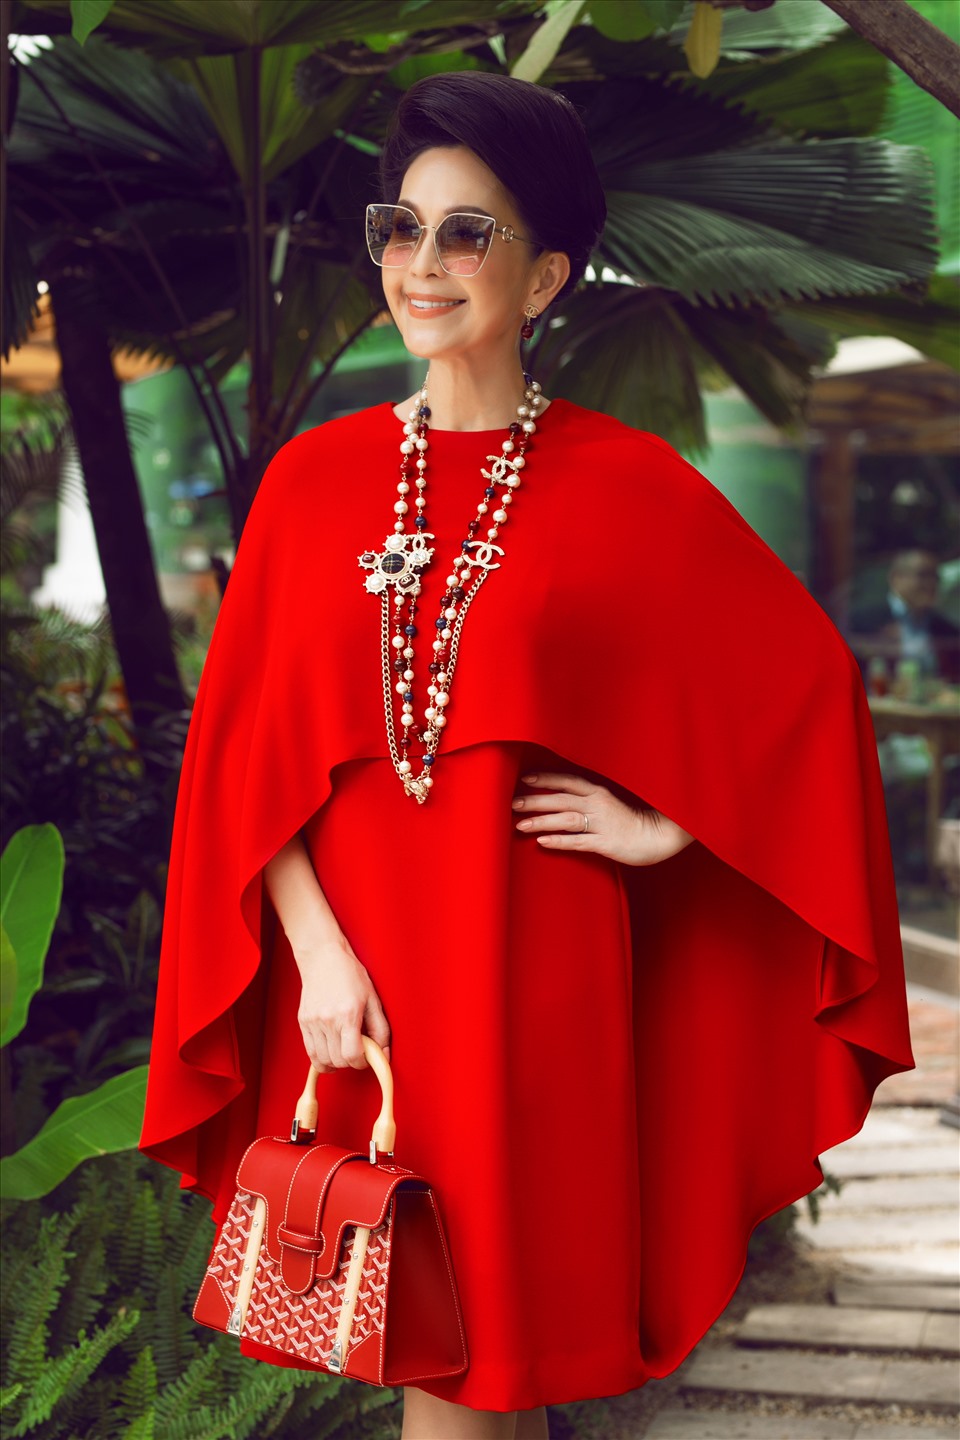 Nữ diễn viên Diễm My luôn thích trang phục tối giản, kết hợp cùng phụ kiện đắt đỏ. Ảnh: Khánh Linh, Bảo Trần.